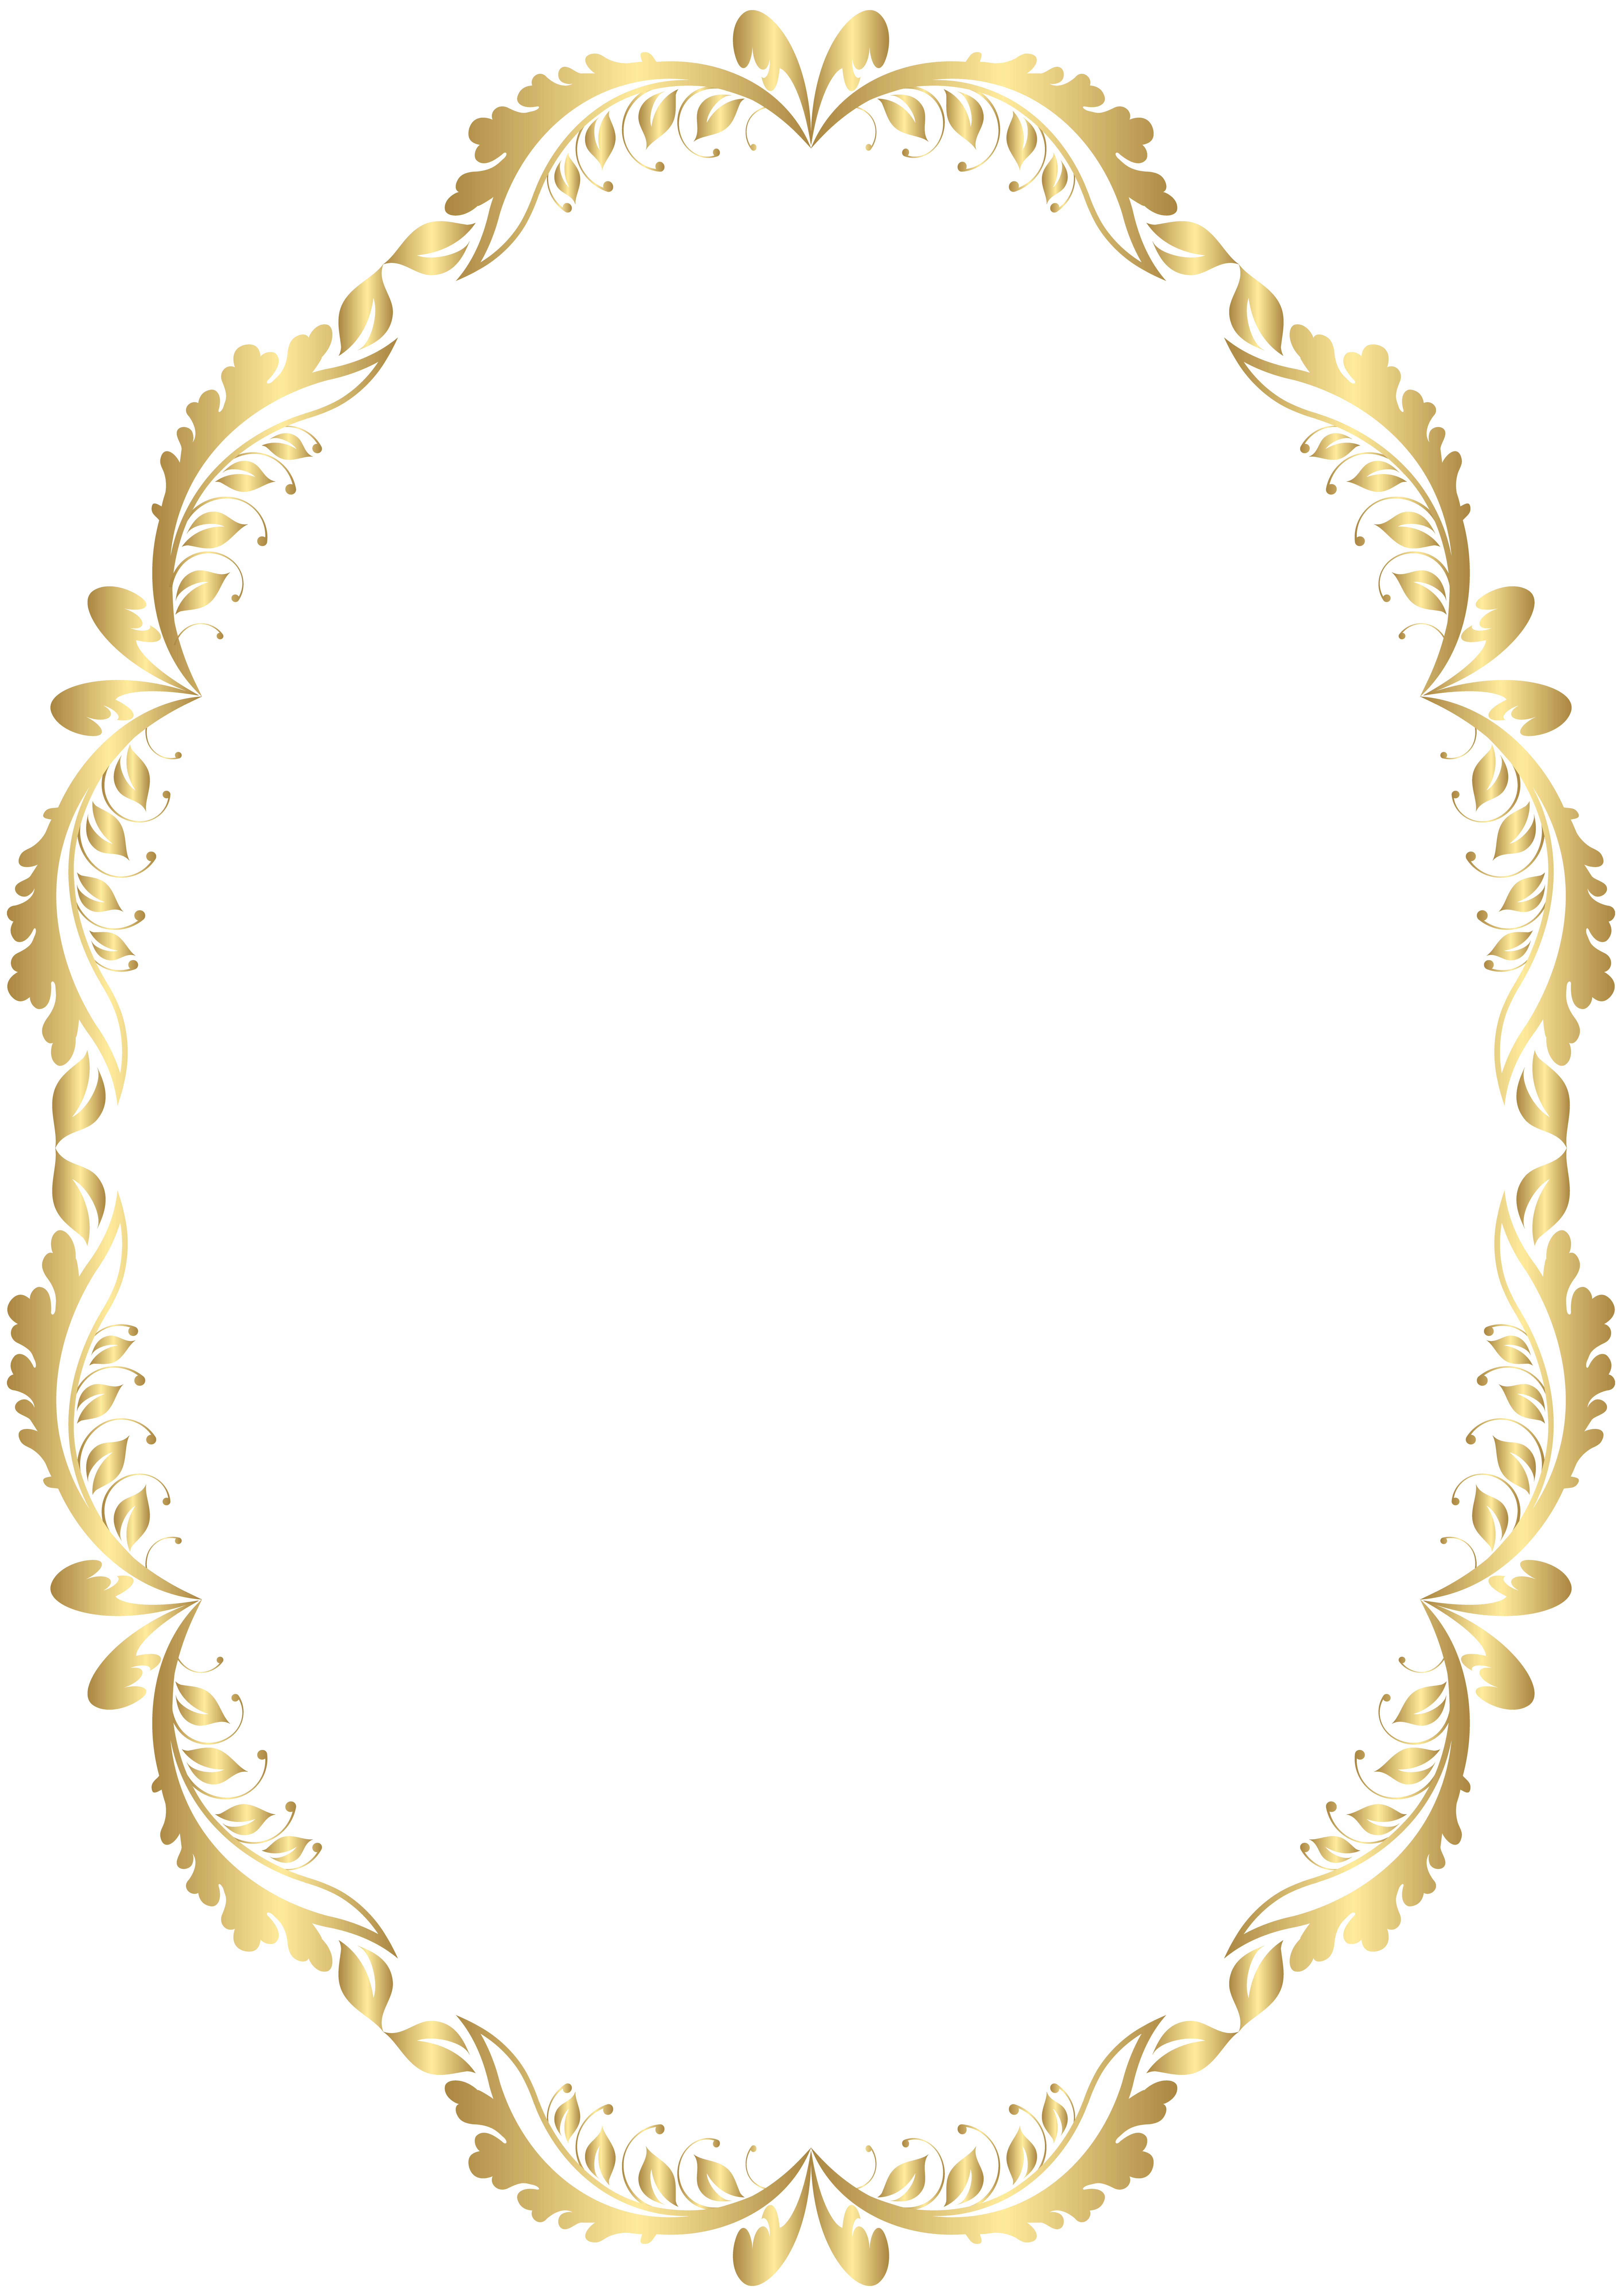 Clipart design royal. Golden oval border transparent